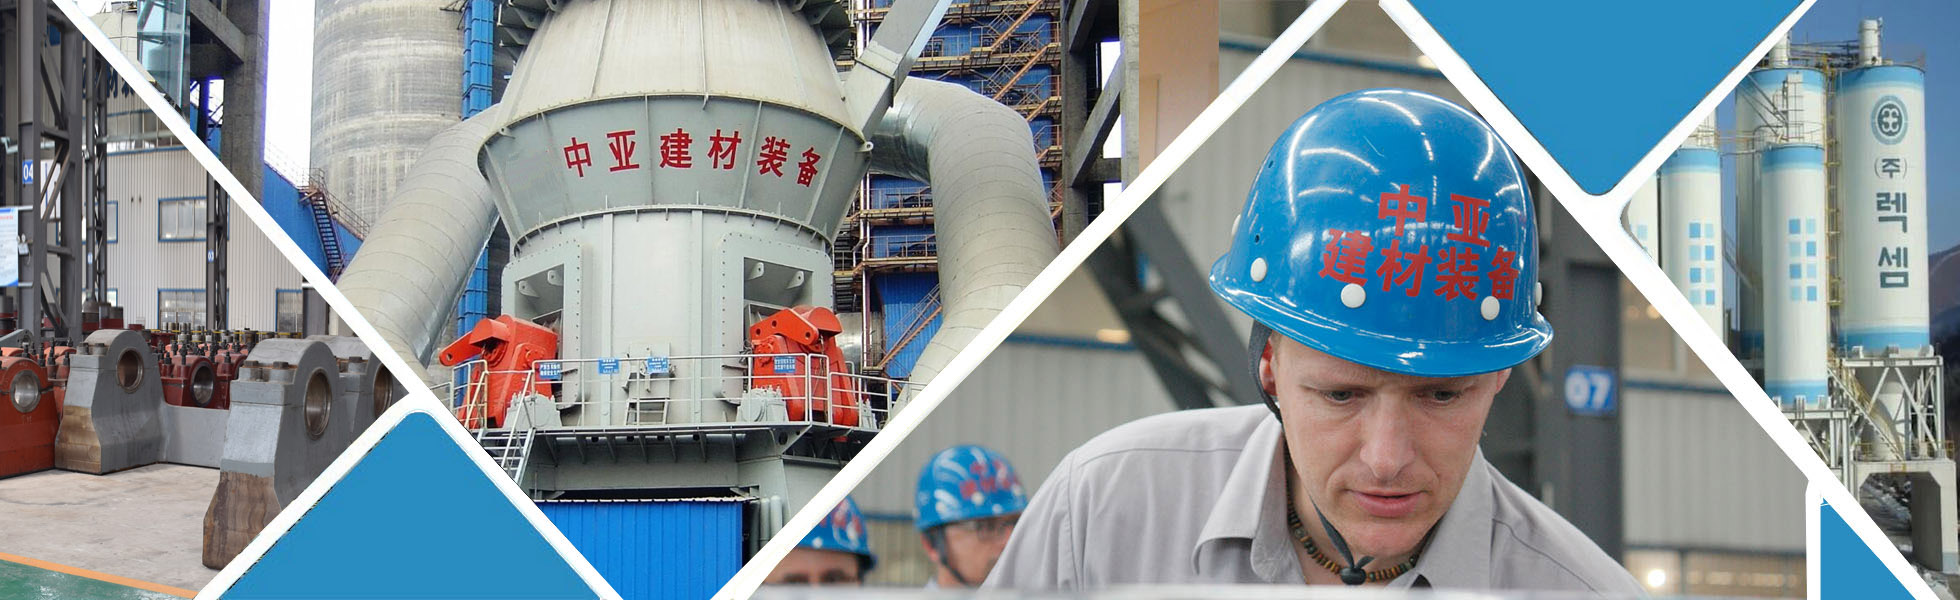 合肥中亚建材装备有限责任公司